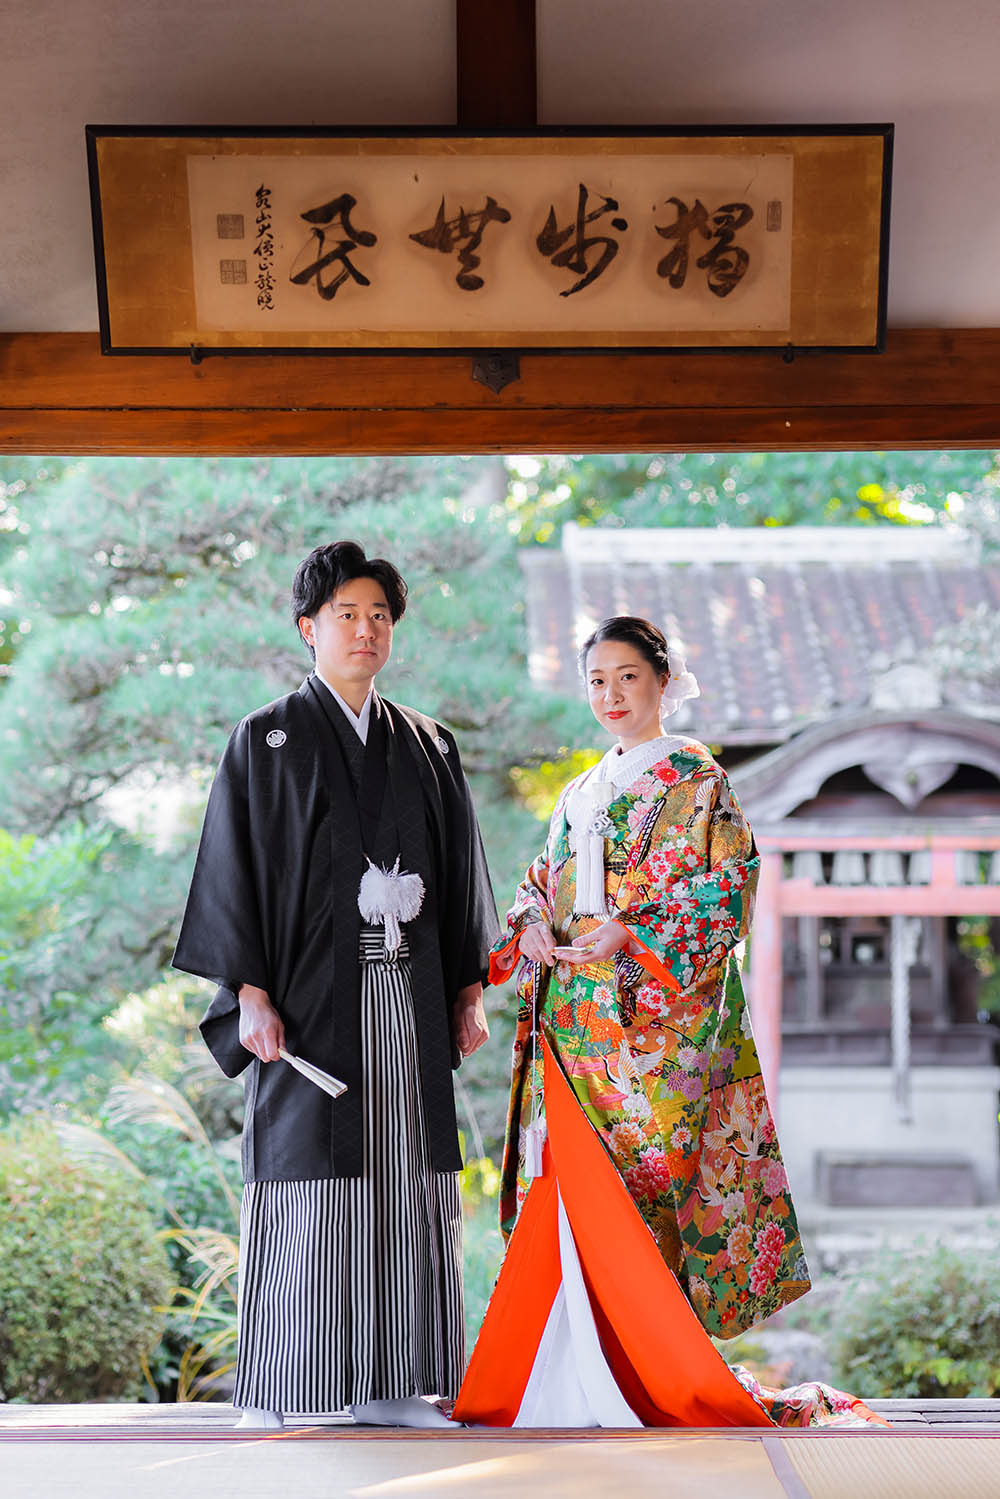 京都戒光寺のお庭を背景に色打掛と羽織袴姿のカップル様